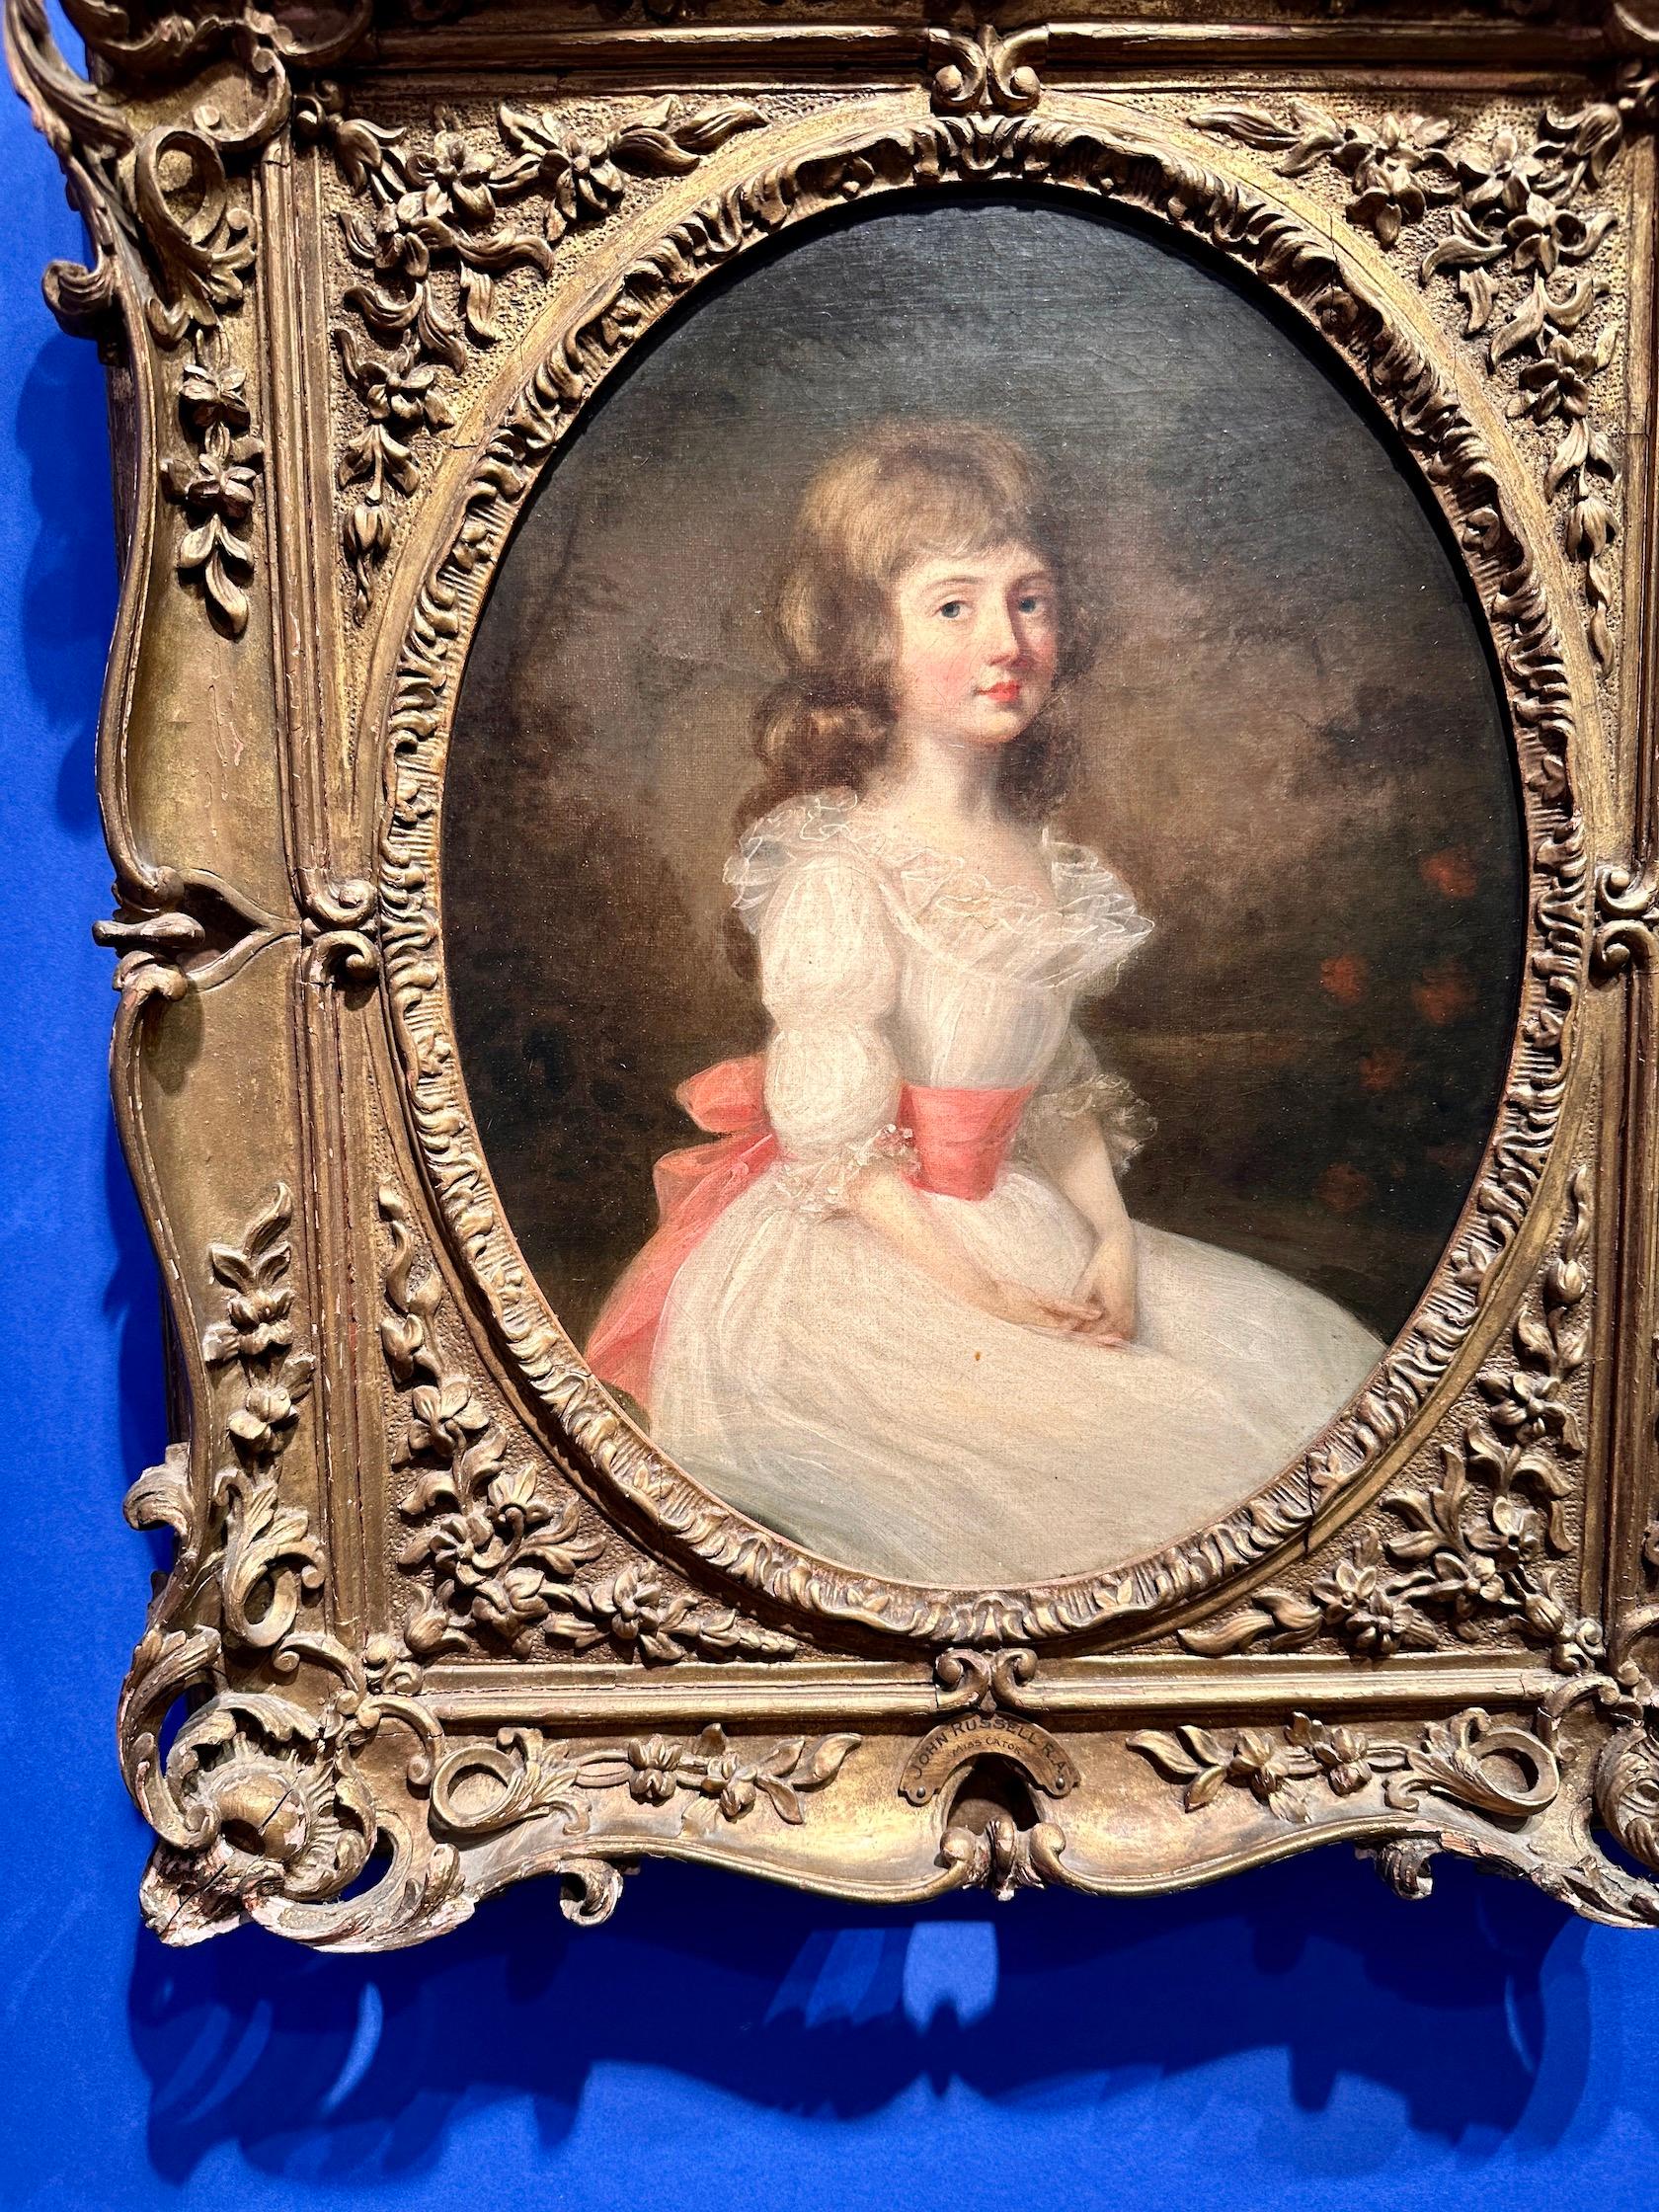 Porträt eines jungen Mädchens aus dem 18. Jahrhundert, Miss Cator in einer Landschaft, weißes Kleid – Painting von John Russell